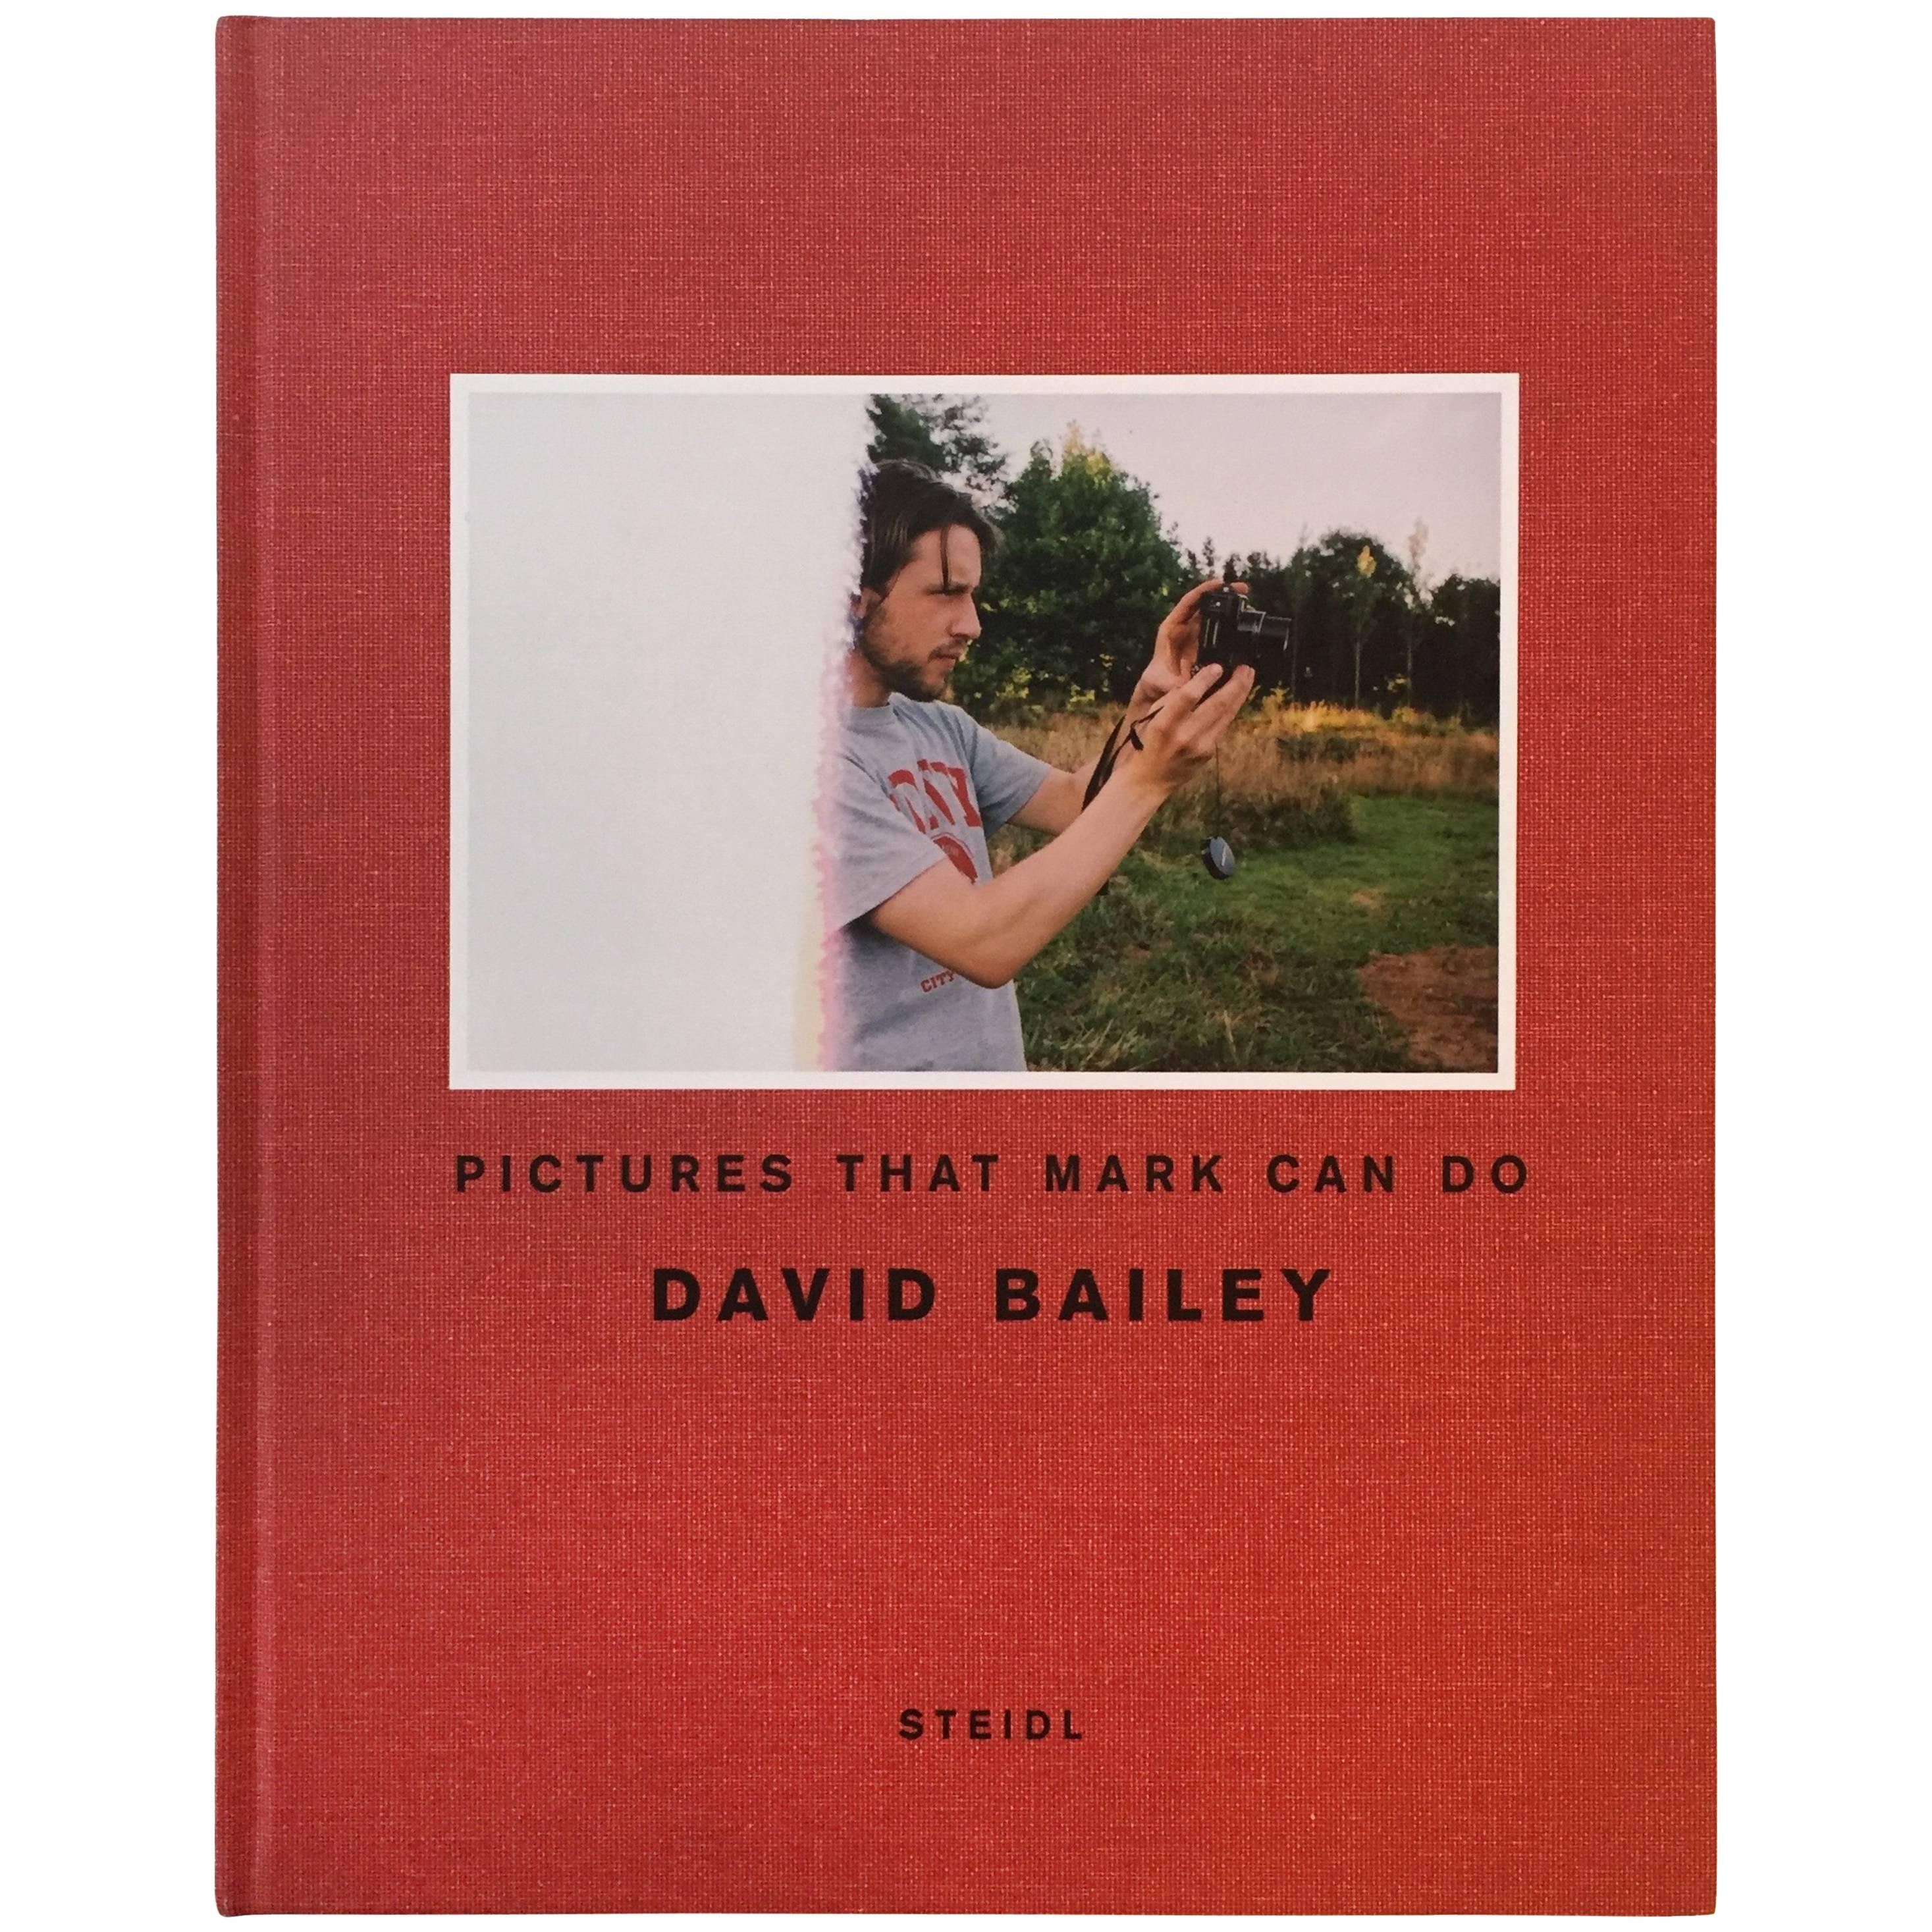 Bilder, die Mark machen kann - David Bailey - Signierte 1. Auflage, Steidl, 2007